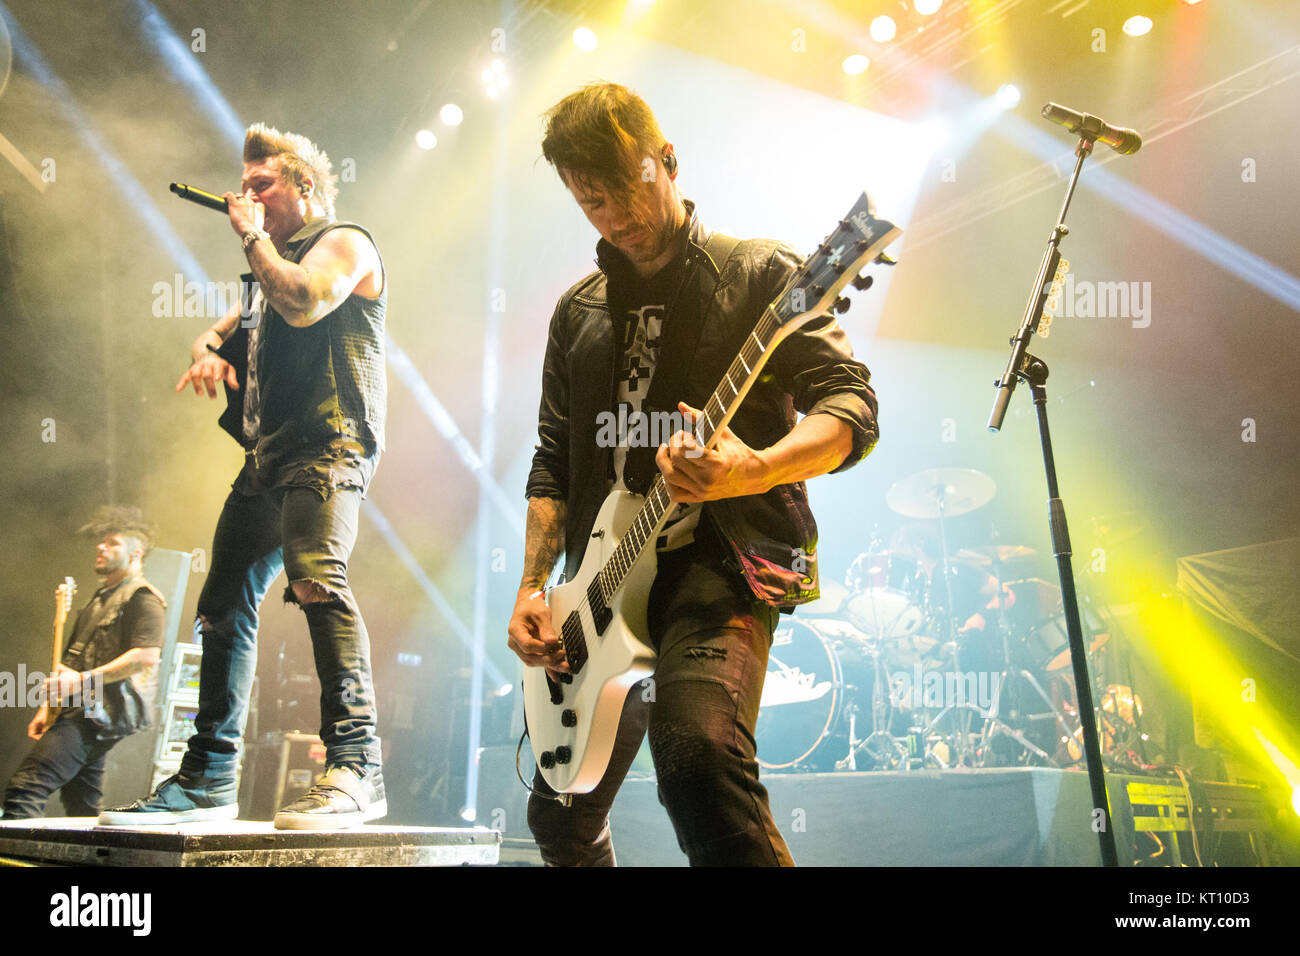 Le groupe de metal américain de rock Papa Roach effectue un concert live à Sentrum Scene à Oslo. Ici le guitariste Jerry Horton est vu sur scène. La Norvège, le 05/11 2015. Banque D'Images